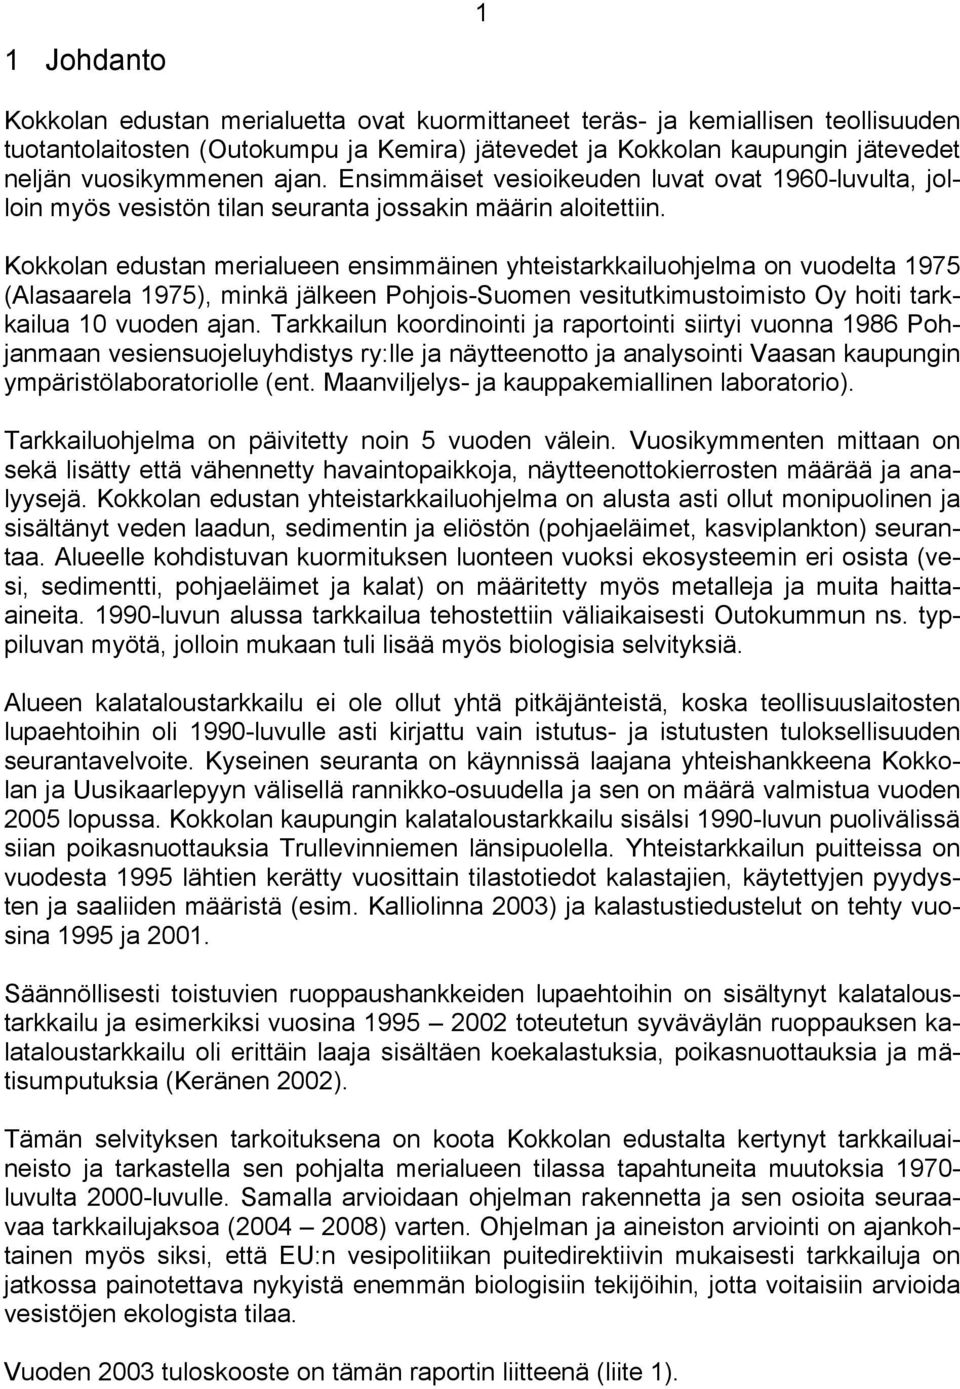 Kokkolan edustan merialueen ensimmäinen yhteistarkkailuohjelma on vuodelta 1975 (Alasaarela 1975), minkä jälkeen Pohjois-Suomen vesitutkimustoimisto Oy hoiti tarkkailua 1 vuoden ajan.